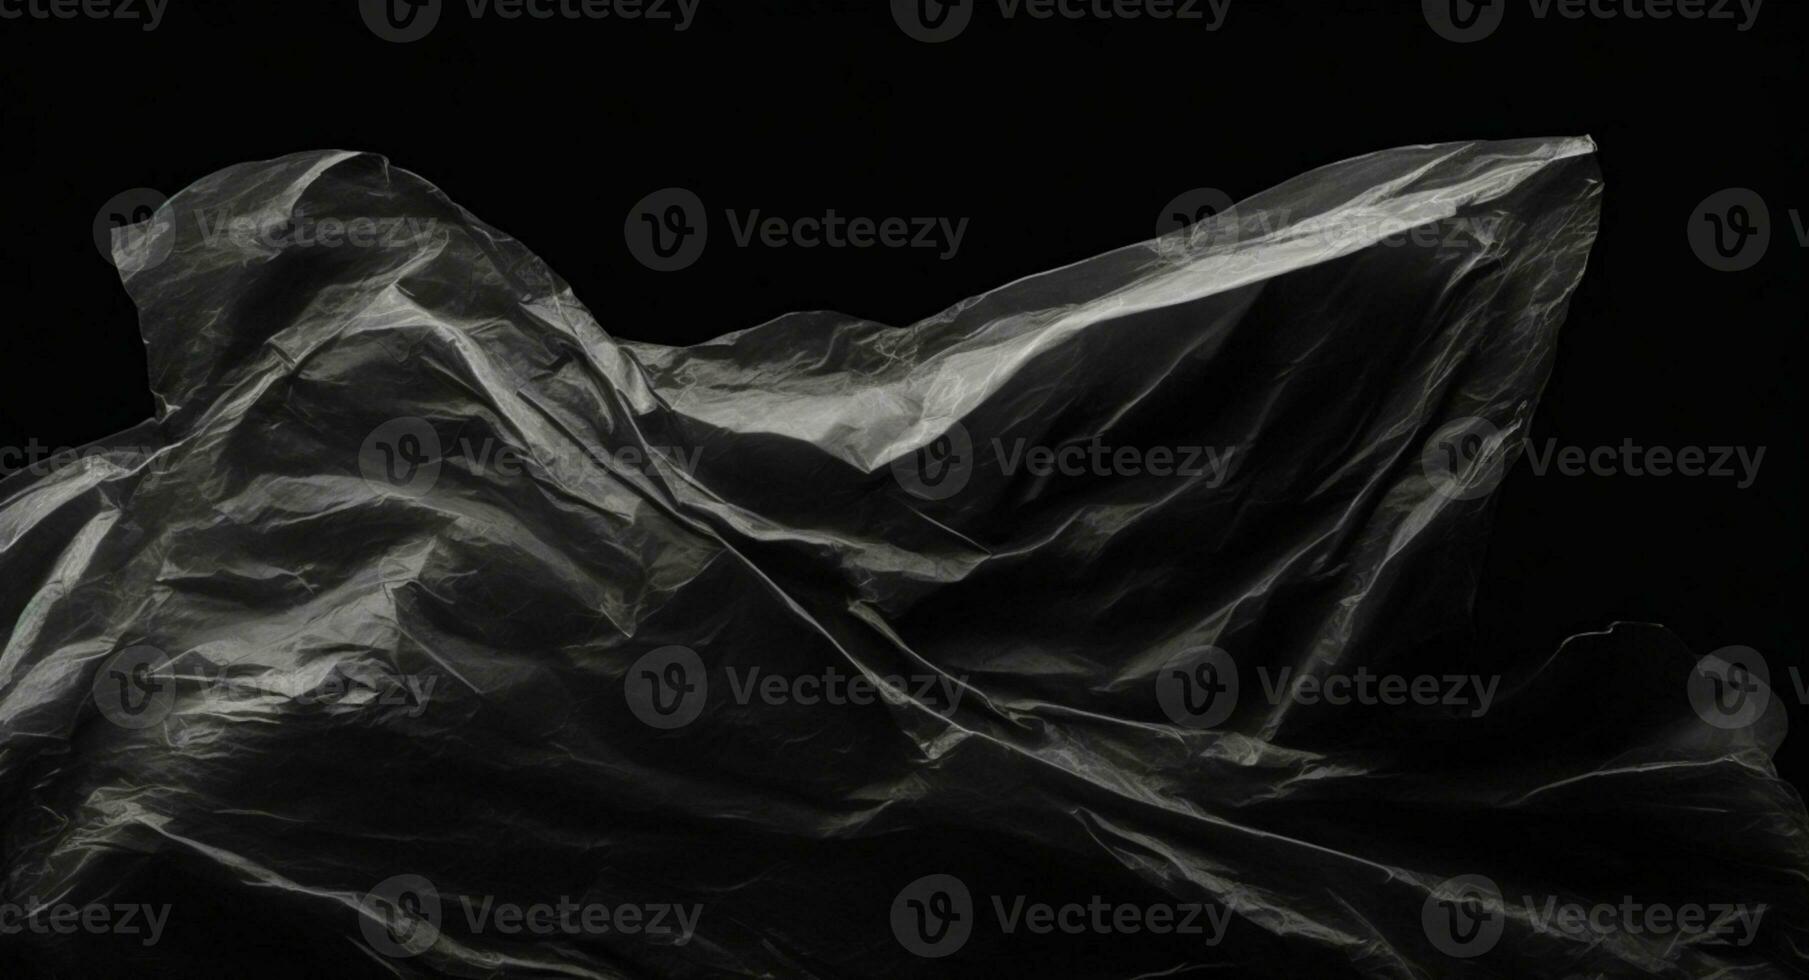 rynkig plast slå in textur på en svart bakgrund. ai genererad foto